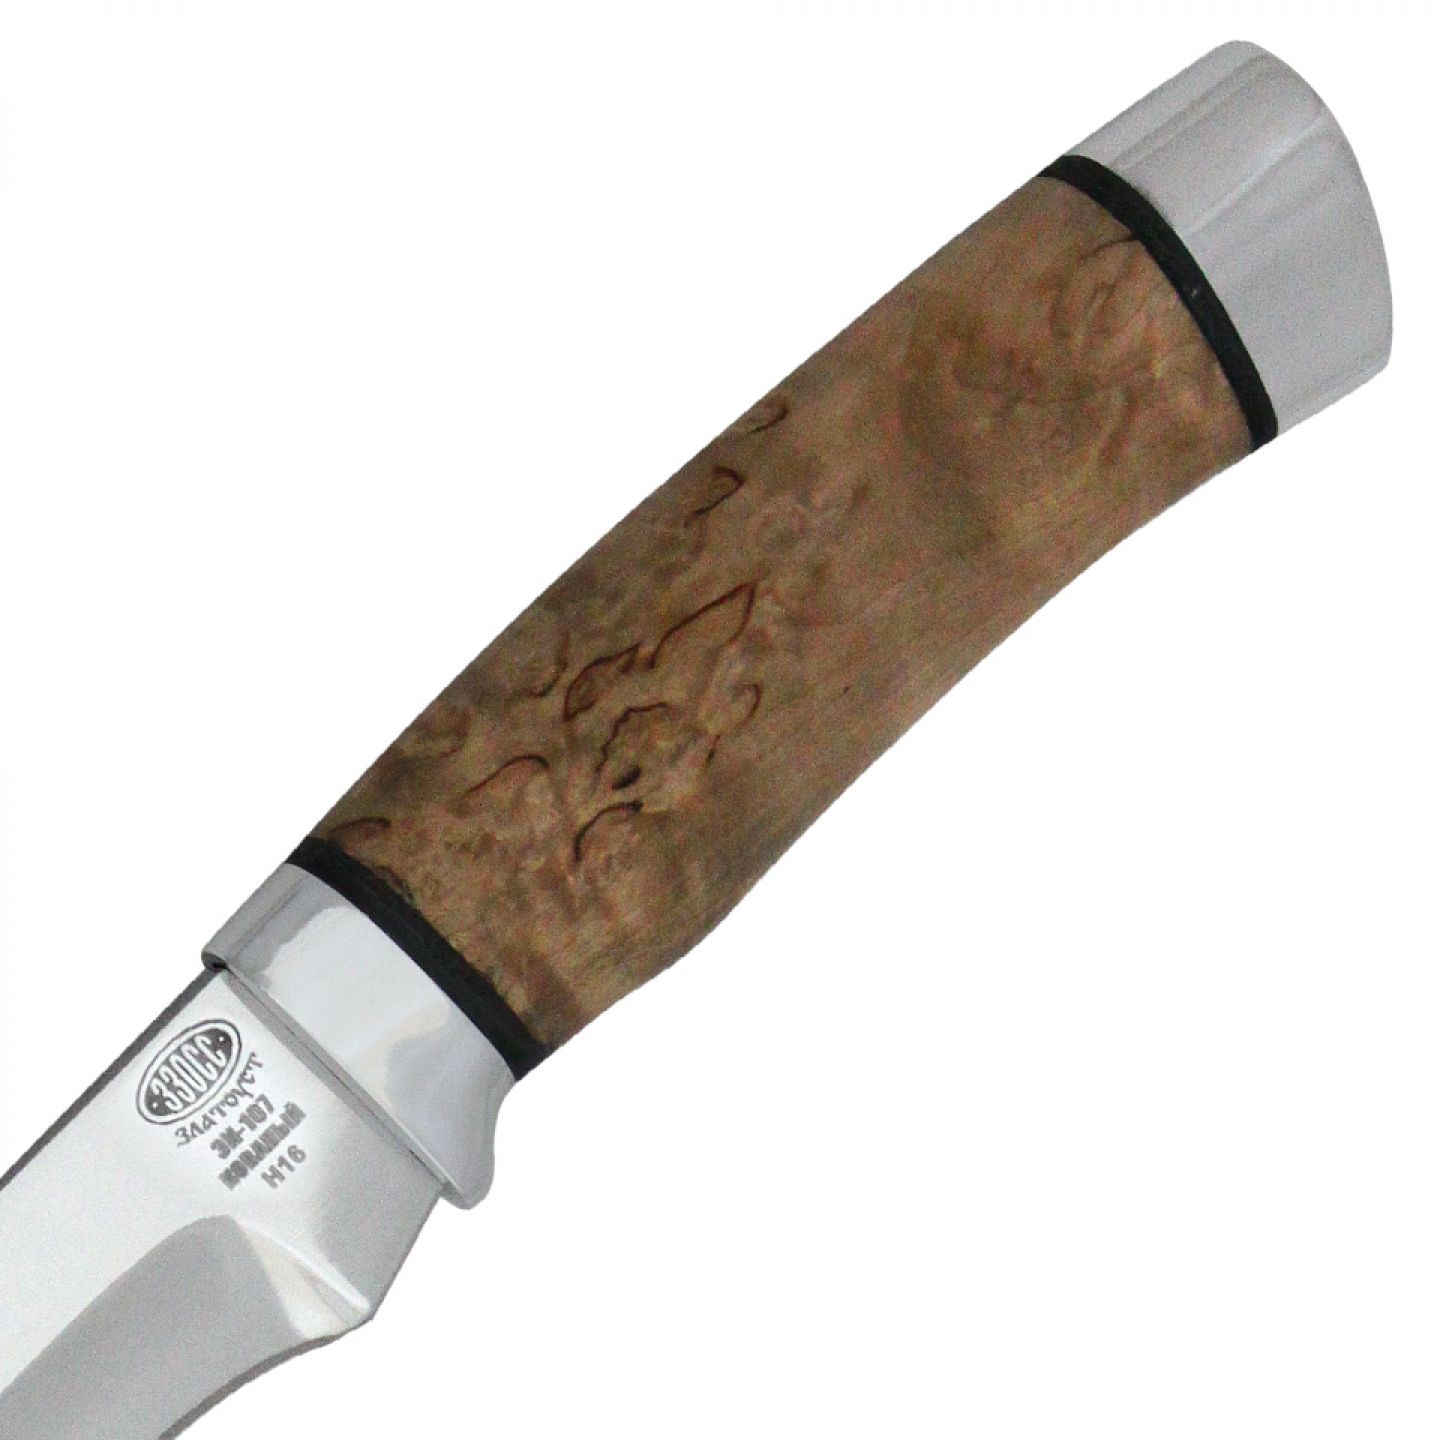 Капа нож. Нож карельская береза. Нож н6, ст. эи107, дюраль, береста ножны. Нож охотничий карельская береза. Рукоять ножа Ореховый кап.